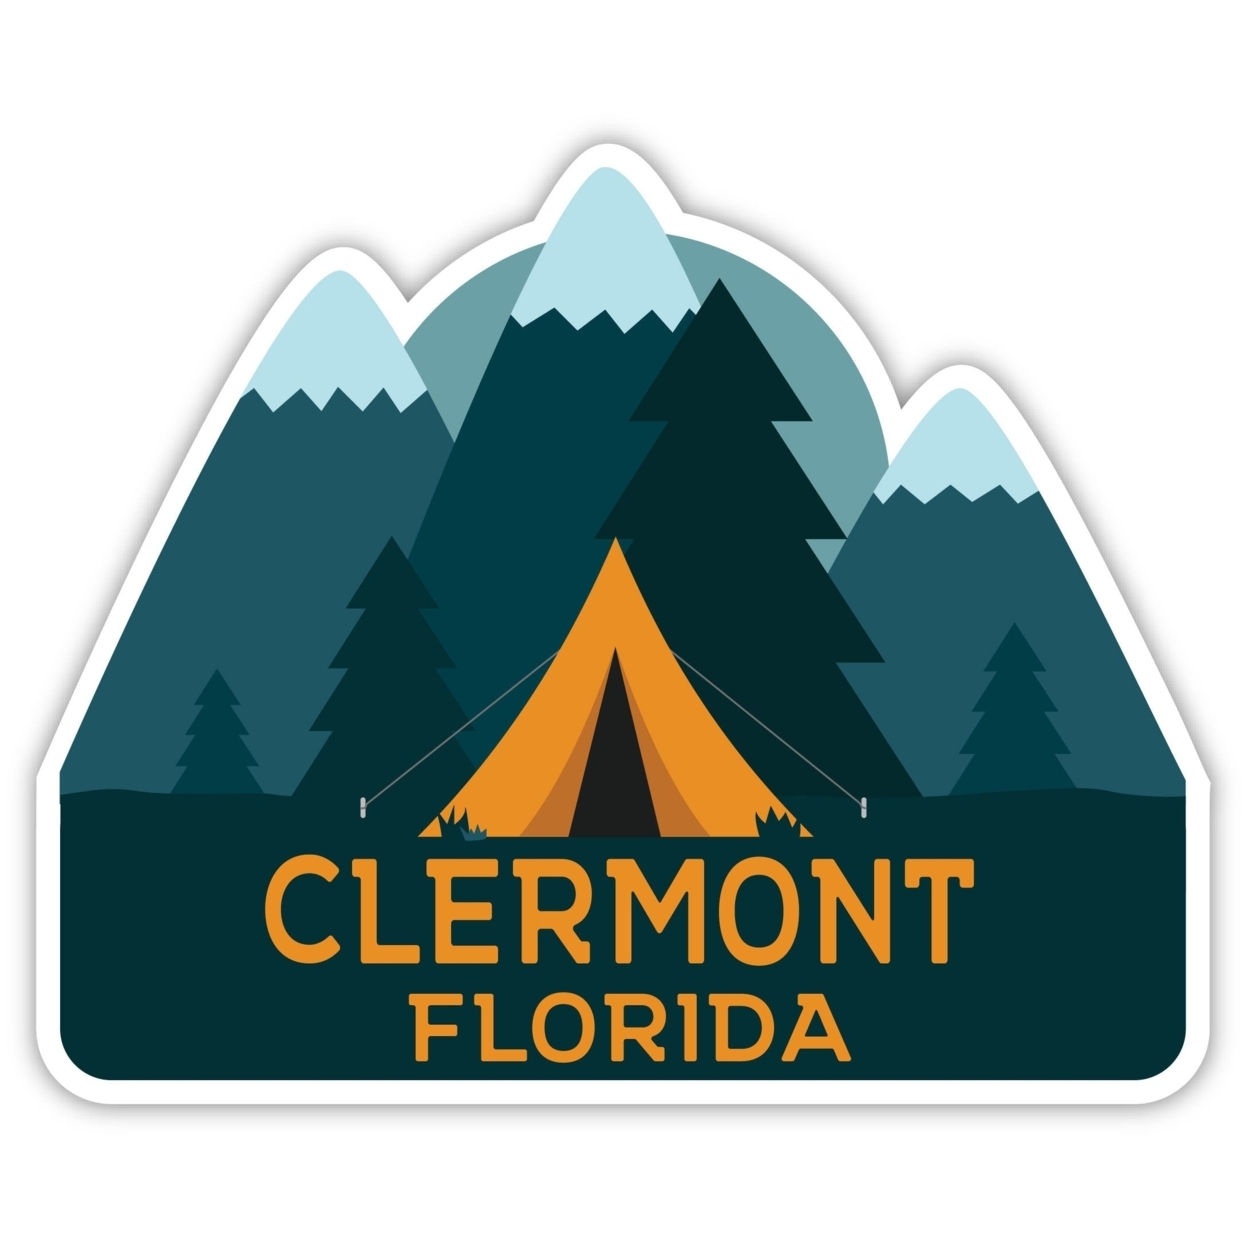 Clermont Florida Souvenir Decorative Stickers (Choose Theme And Size) - Single Unit, 10-Inch, Tent